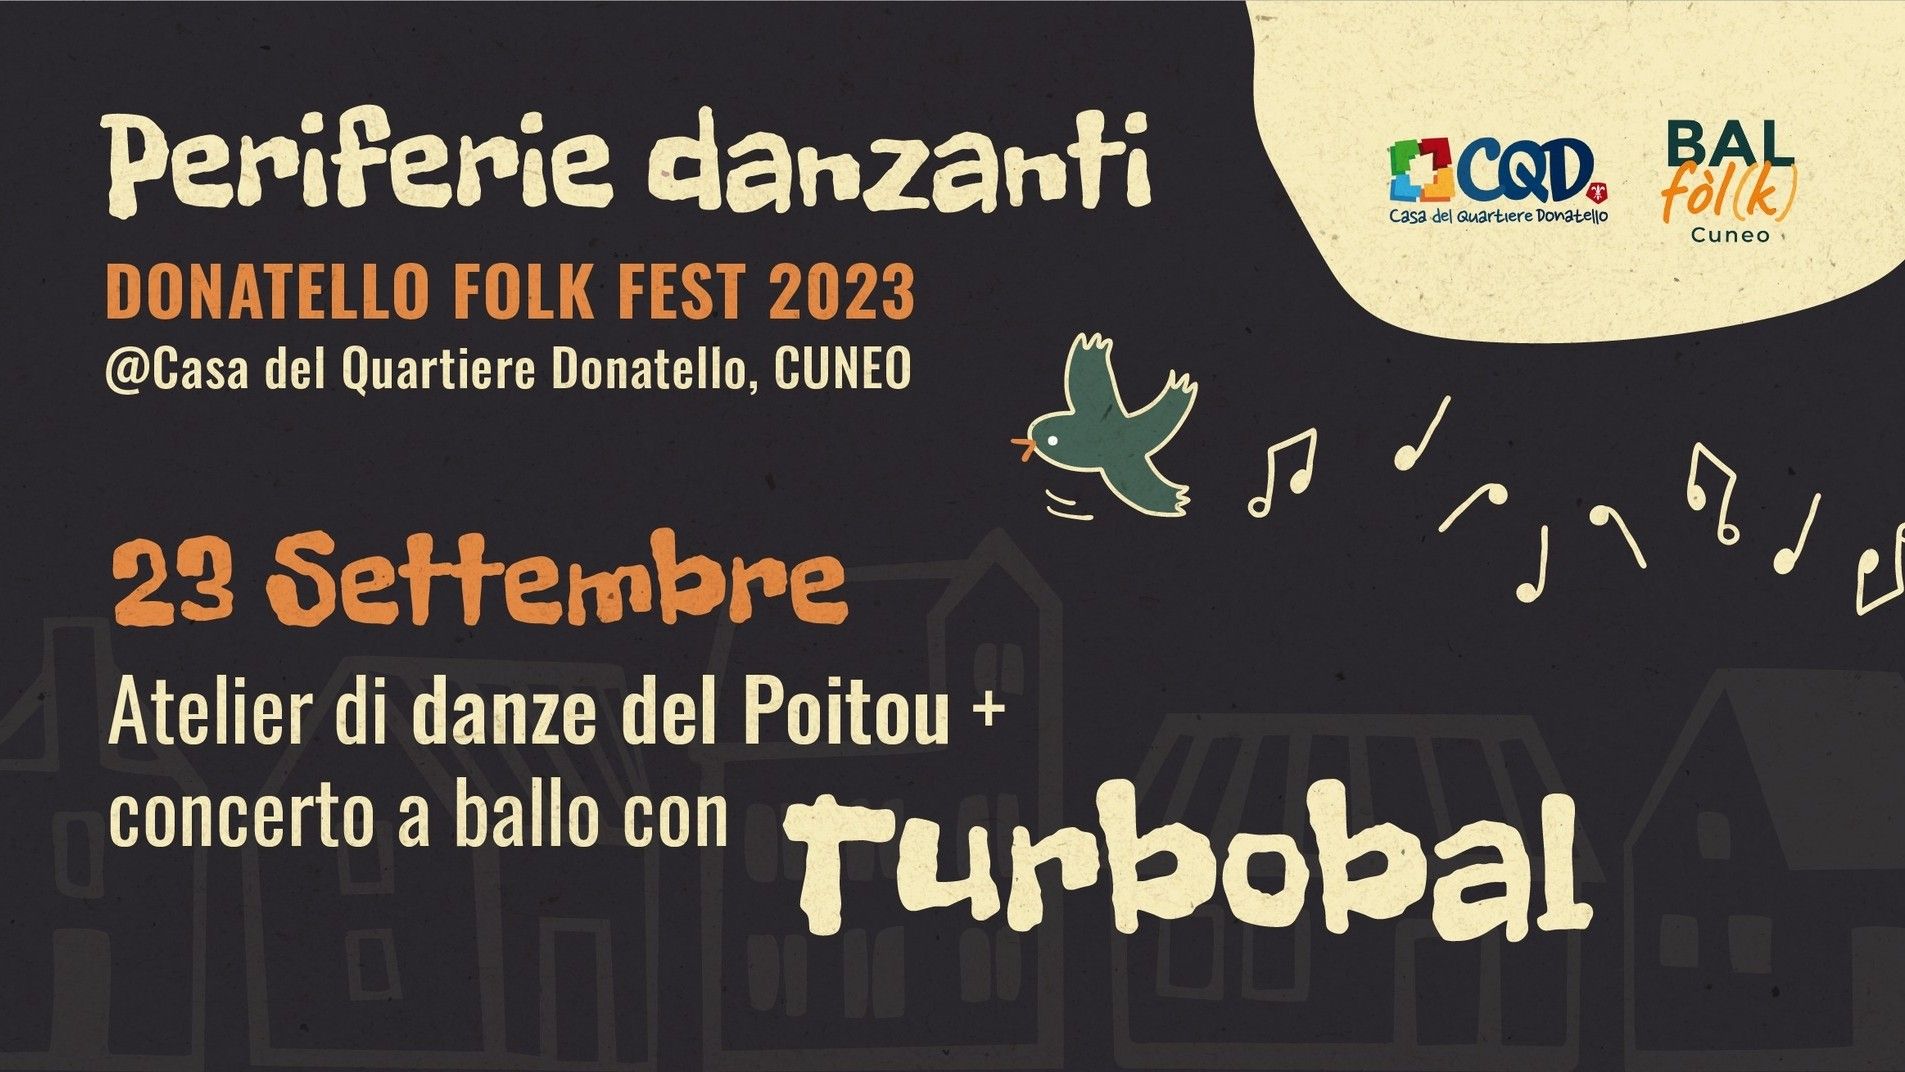 Periferie Danzanti - Donatello Folk Fest: Turbobal + atelier di danze del Poitou!